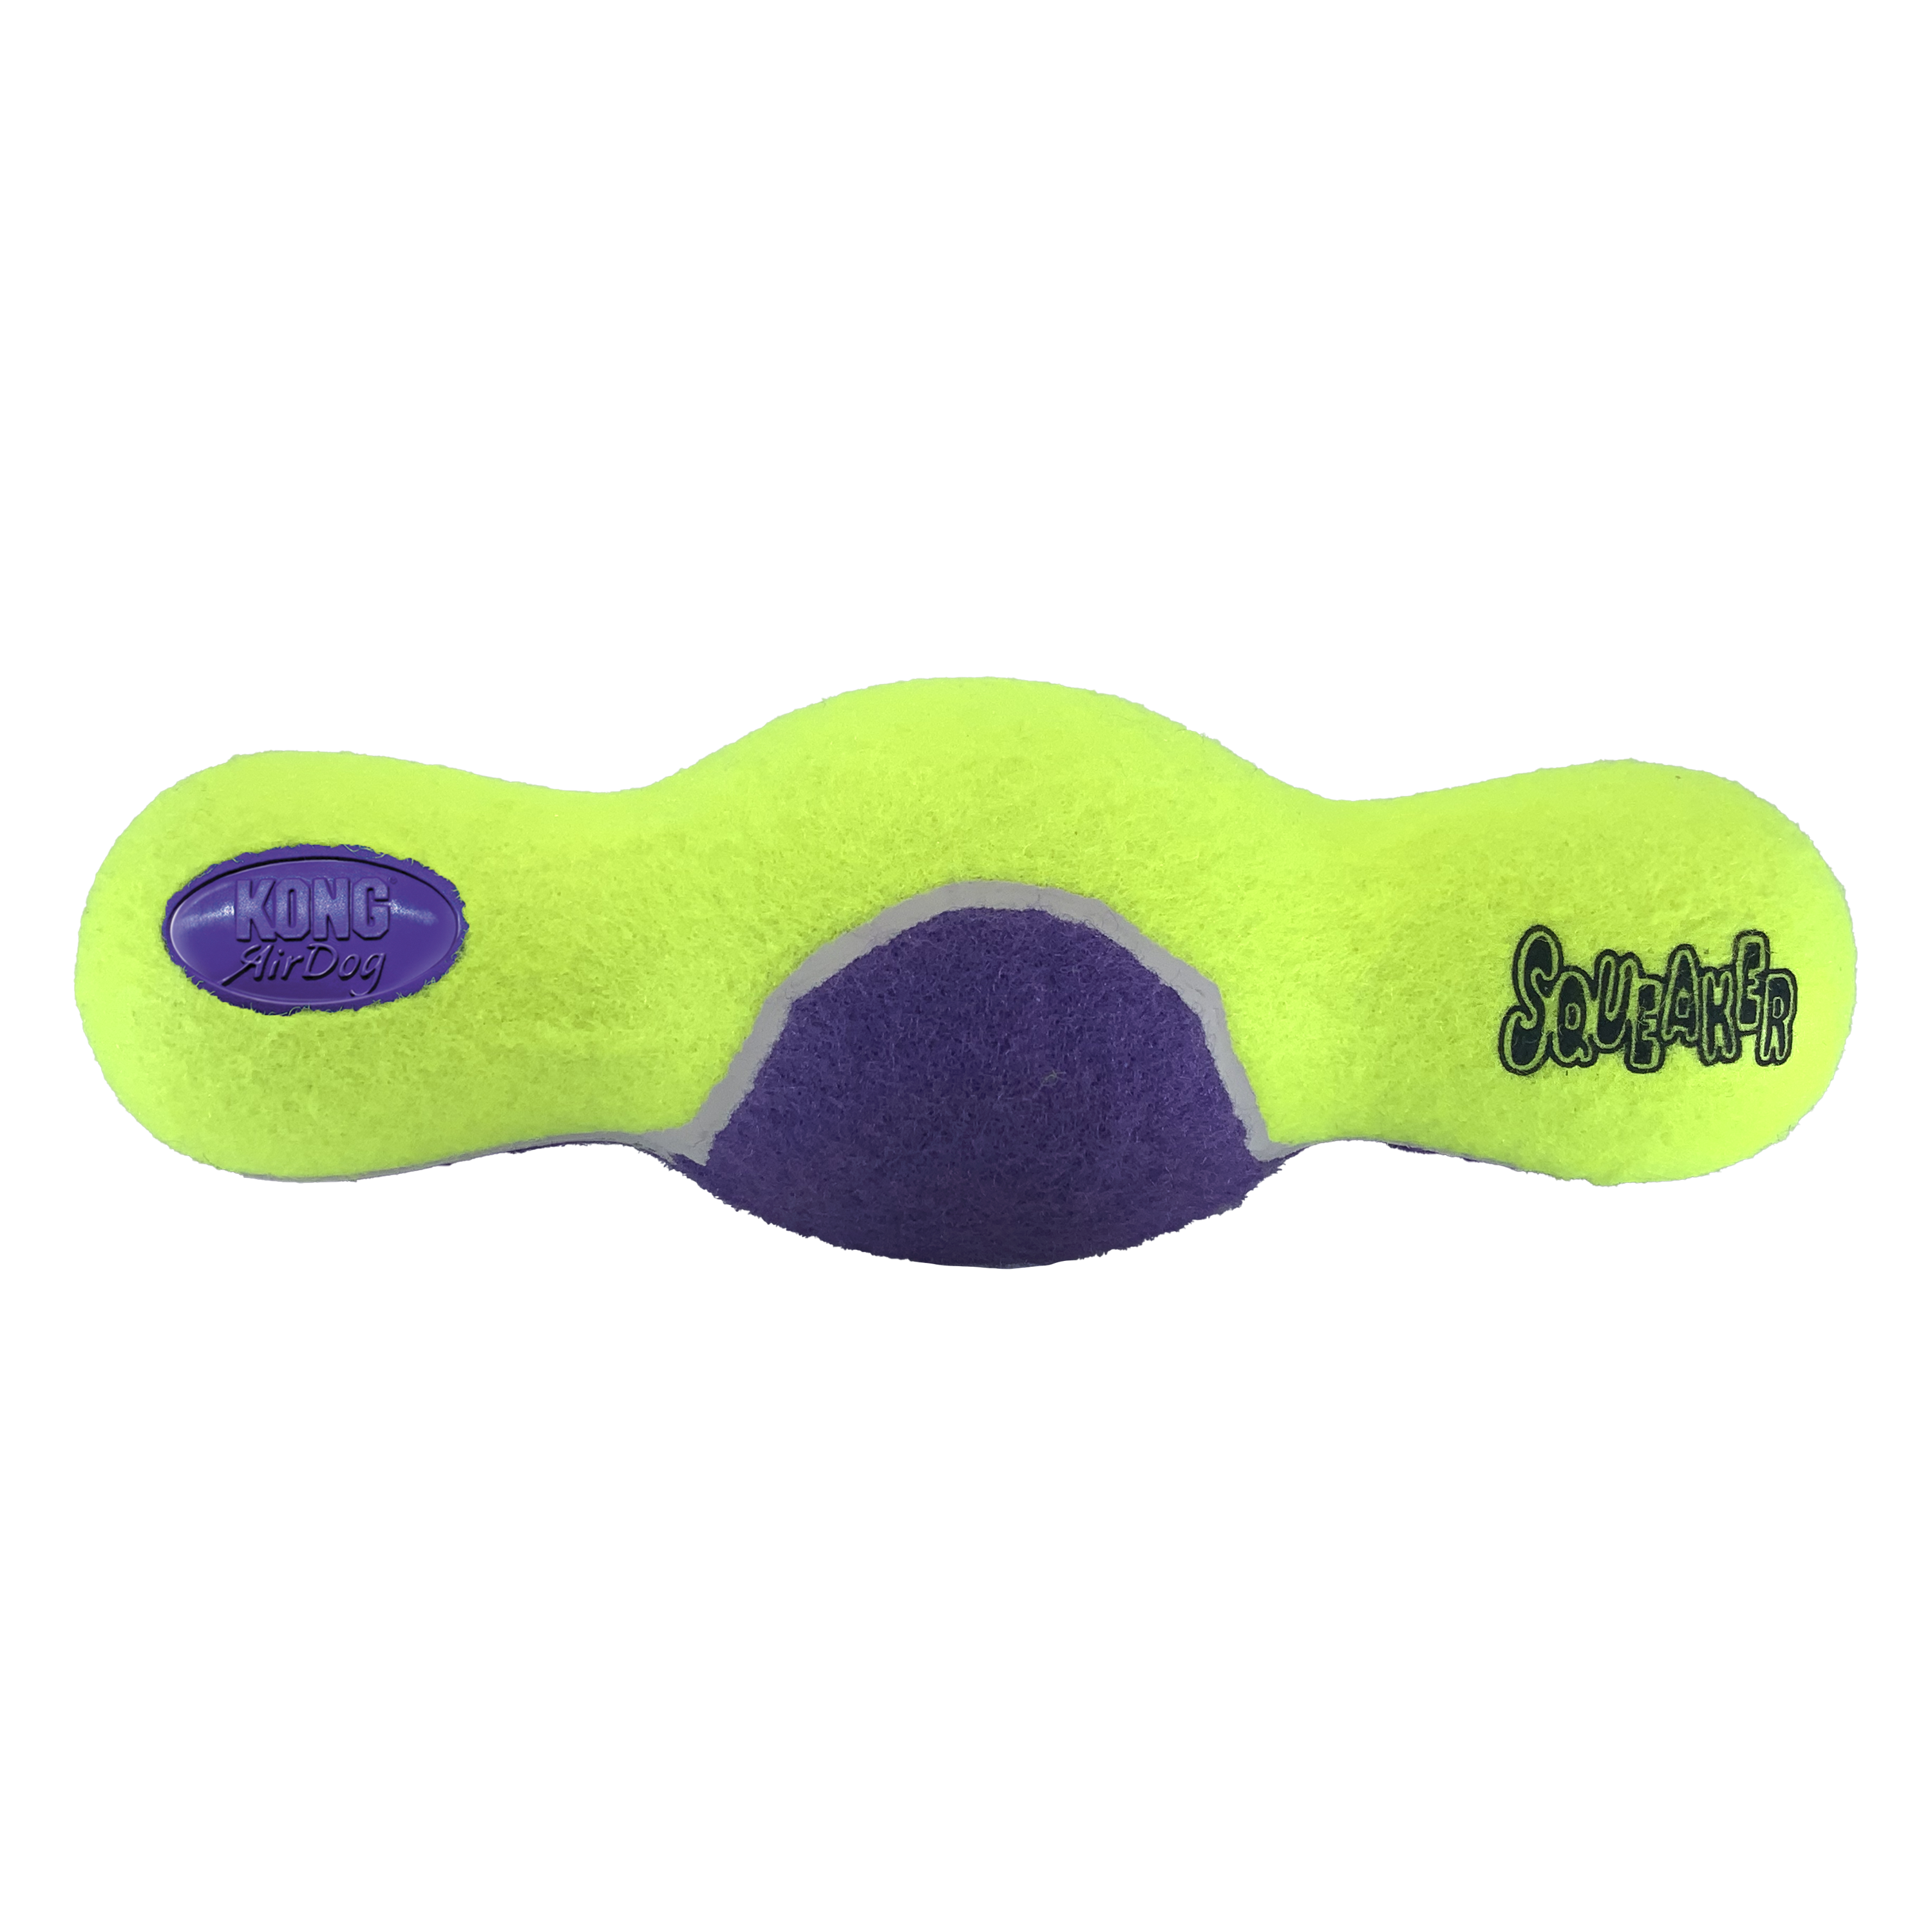 AirDog Squeaker Roller életmód termékkép